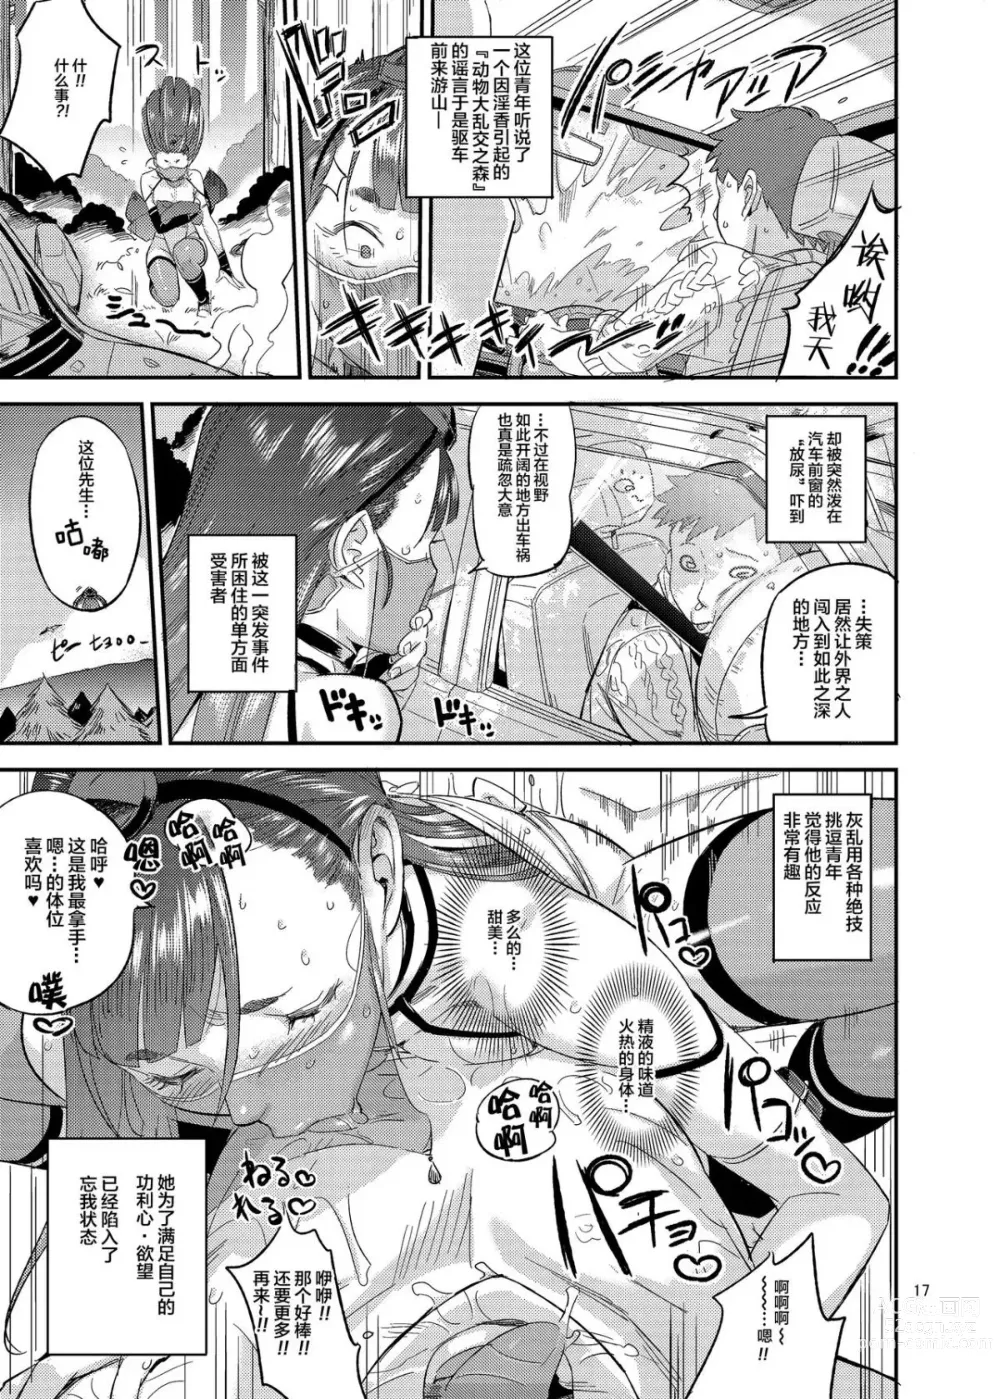 Page 18 of doujinshi Satomori Haira Inpouchou